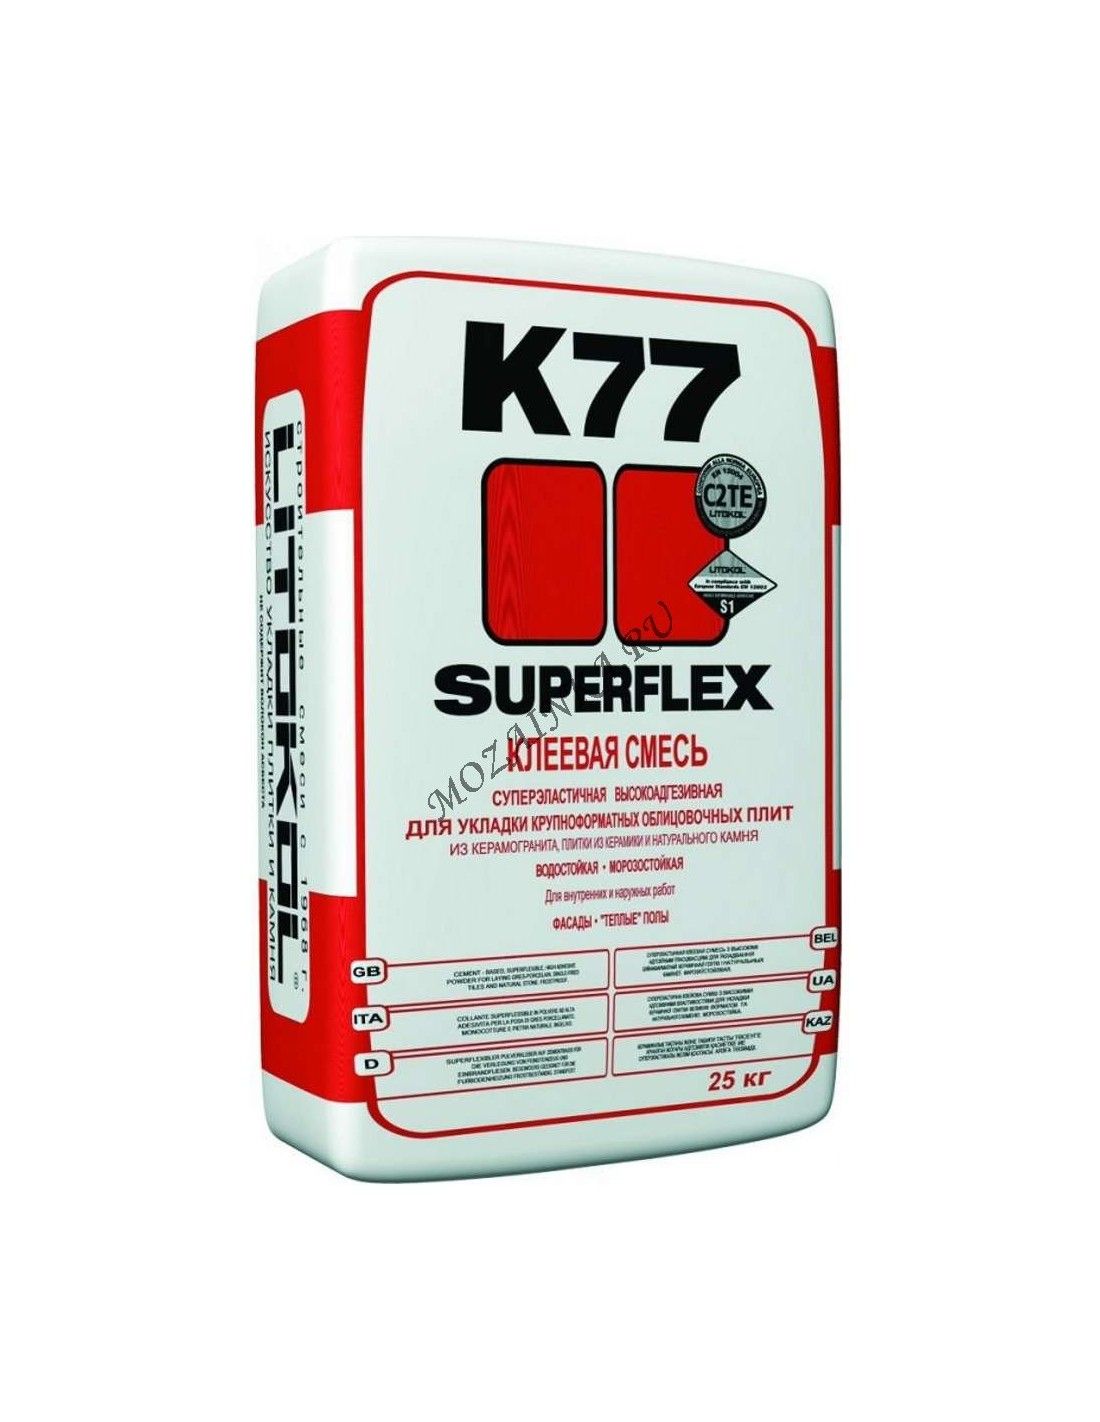 Клей плиточный 25 кг купить. Litokol k77 Superflex. Клей Литокол Суперфлекс к 77. Клей для плитки Litokol Superflex k77 25 кг. Superflex k77 клеевая смесь.